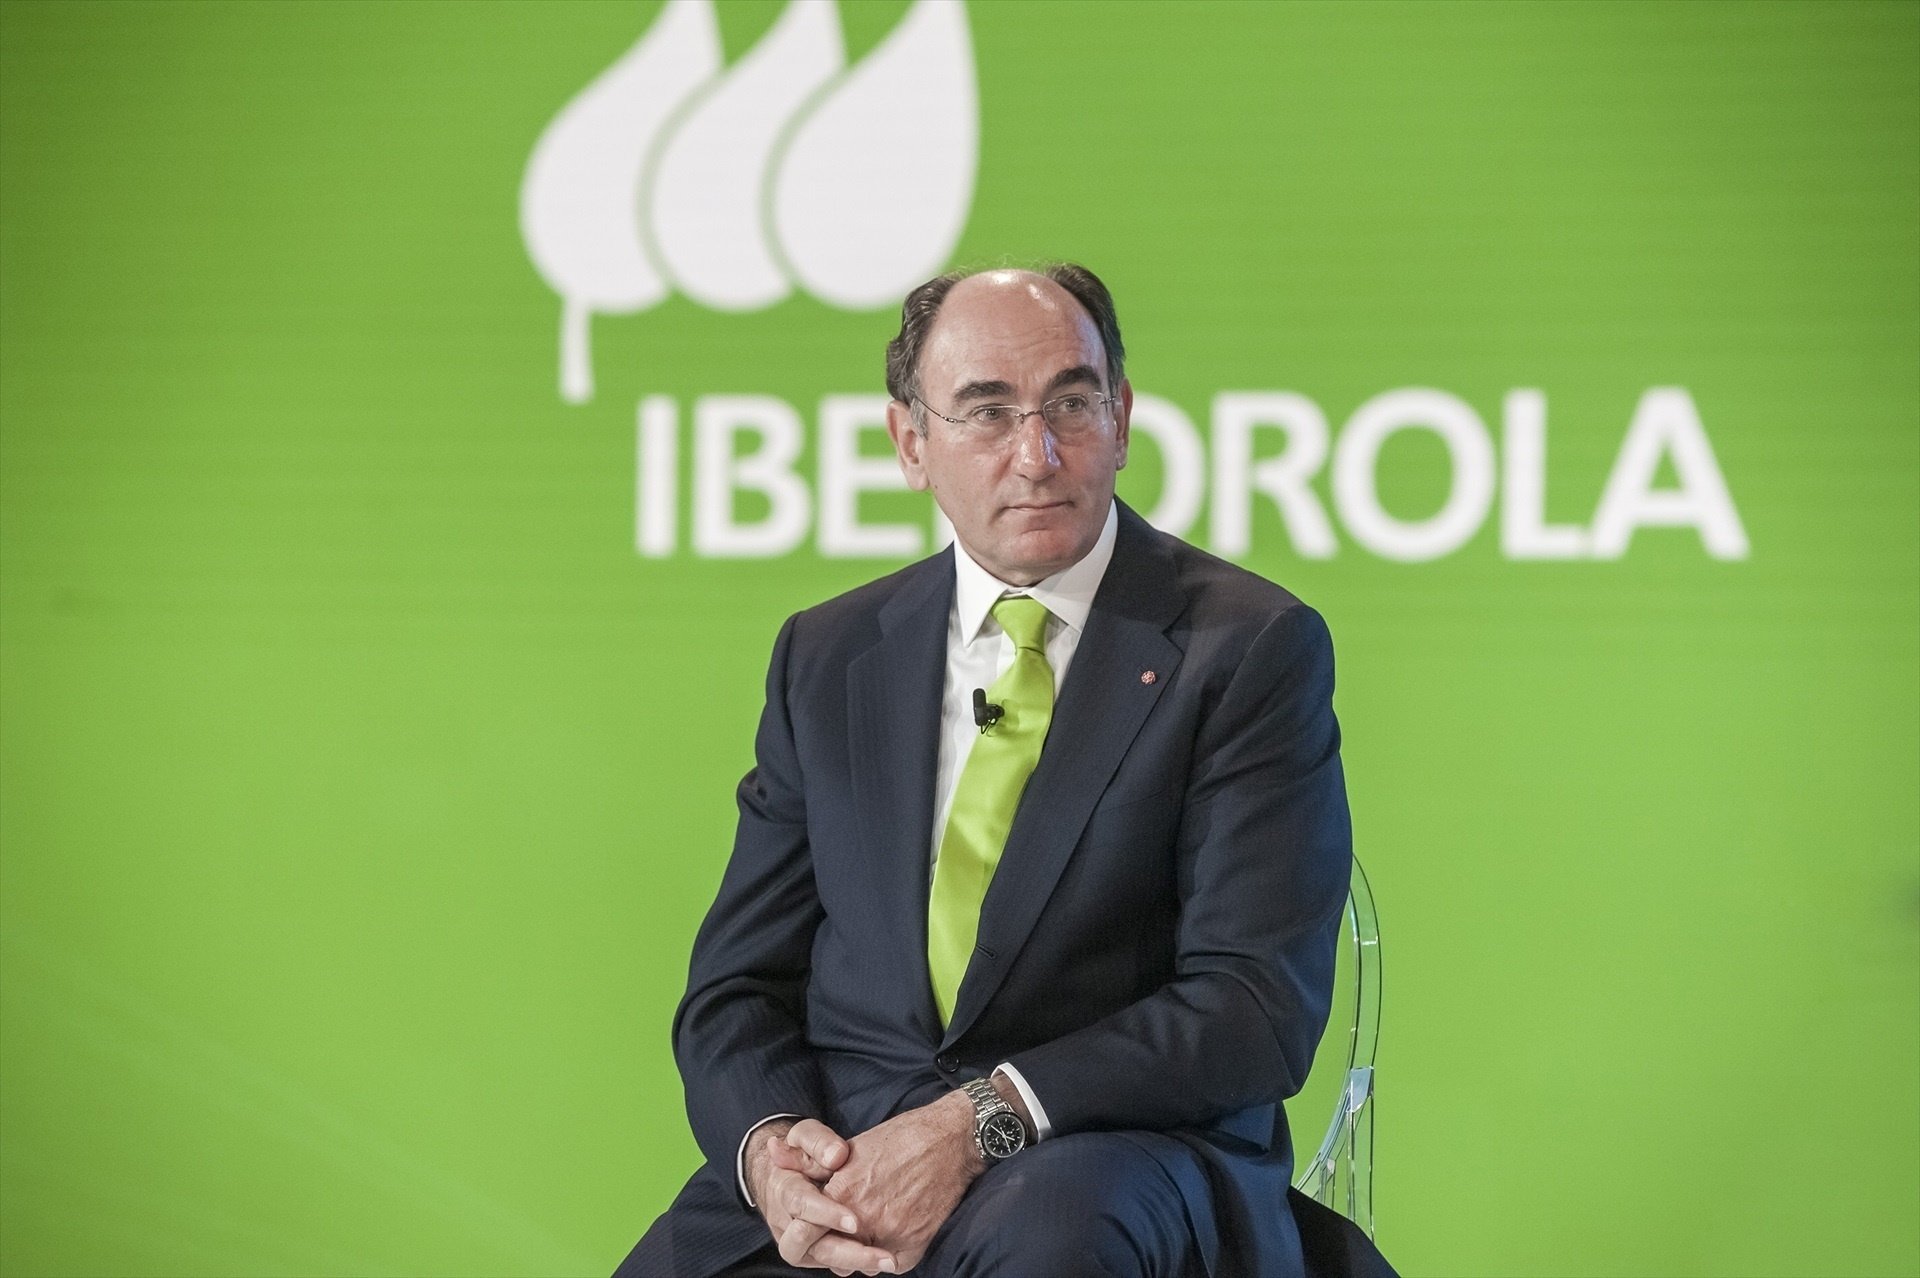 La primera planta eléctrica híbrida de España estará en Extremadura y será de Iberdrola